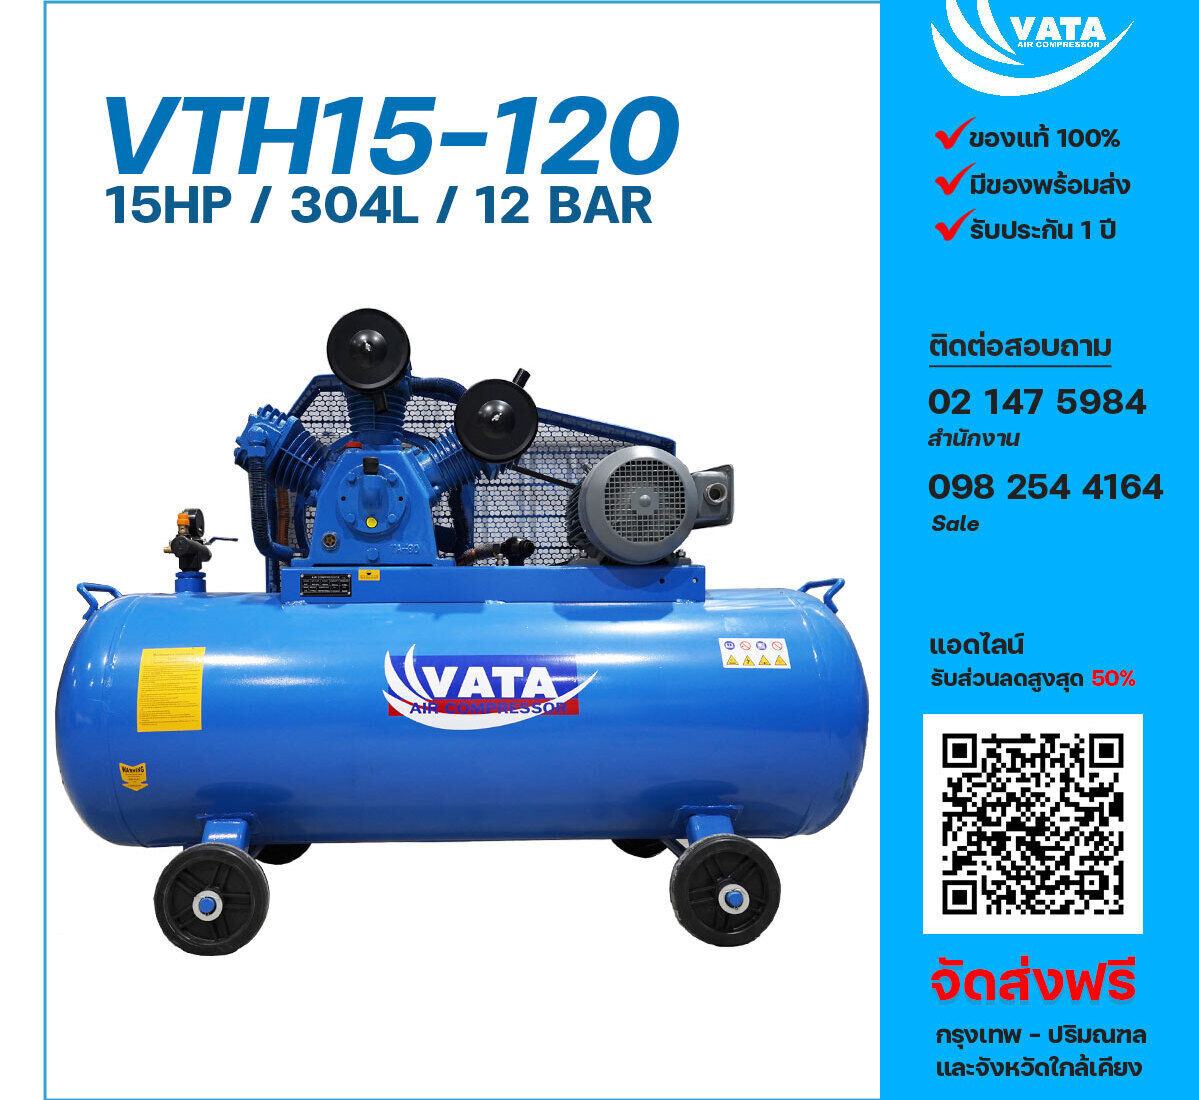 ปั๊มลมวาตะแรงดันสูง VATA Two-Stage VTH15-120 380V ปั๊มลมลูกสูบ ขนาด 3 สูบ 15 แรงม้า 304 ลิตร VATA พร้อมมอเตอร์ ไฟ 380V ส่งฟรี กรุงเทพฯ-ปริมณฑล รับประกัน 1 ปี